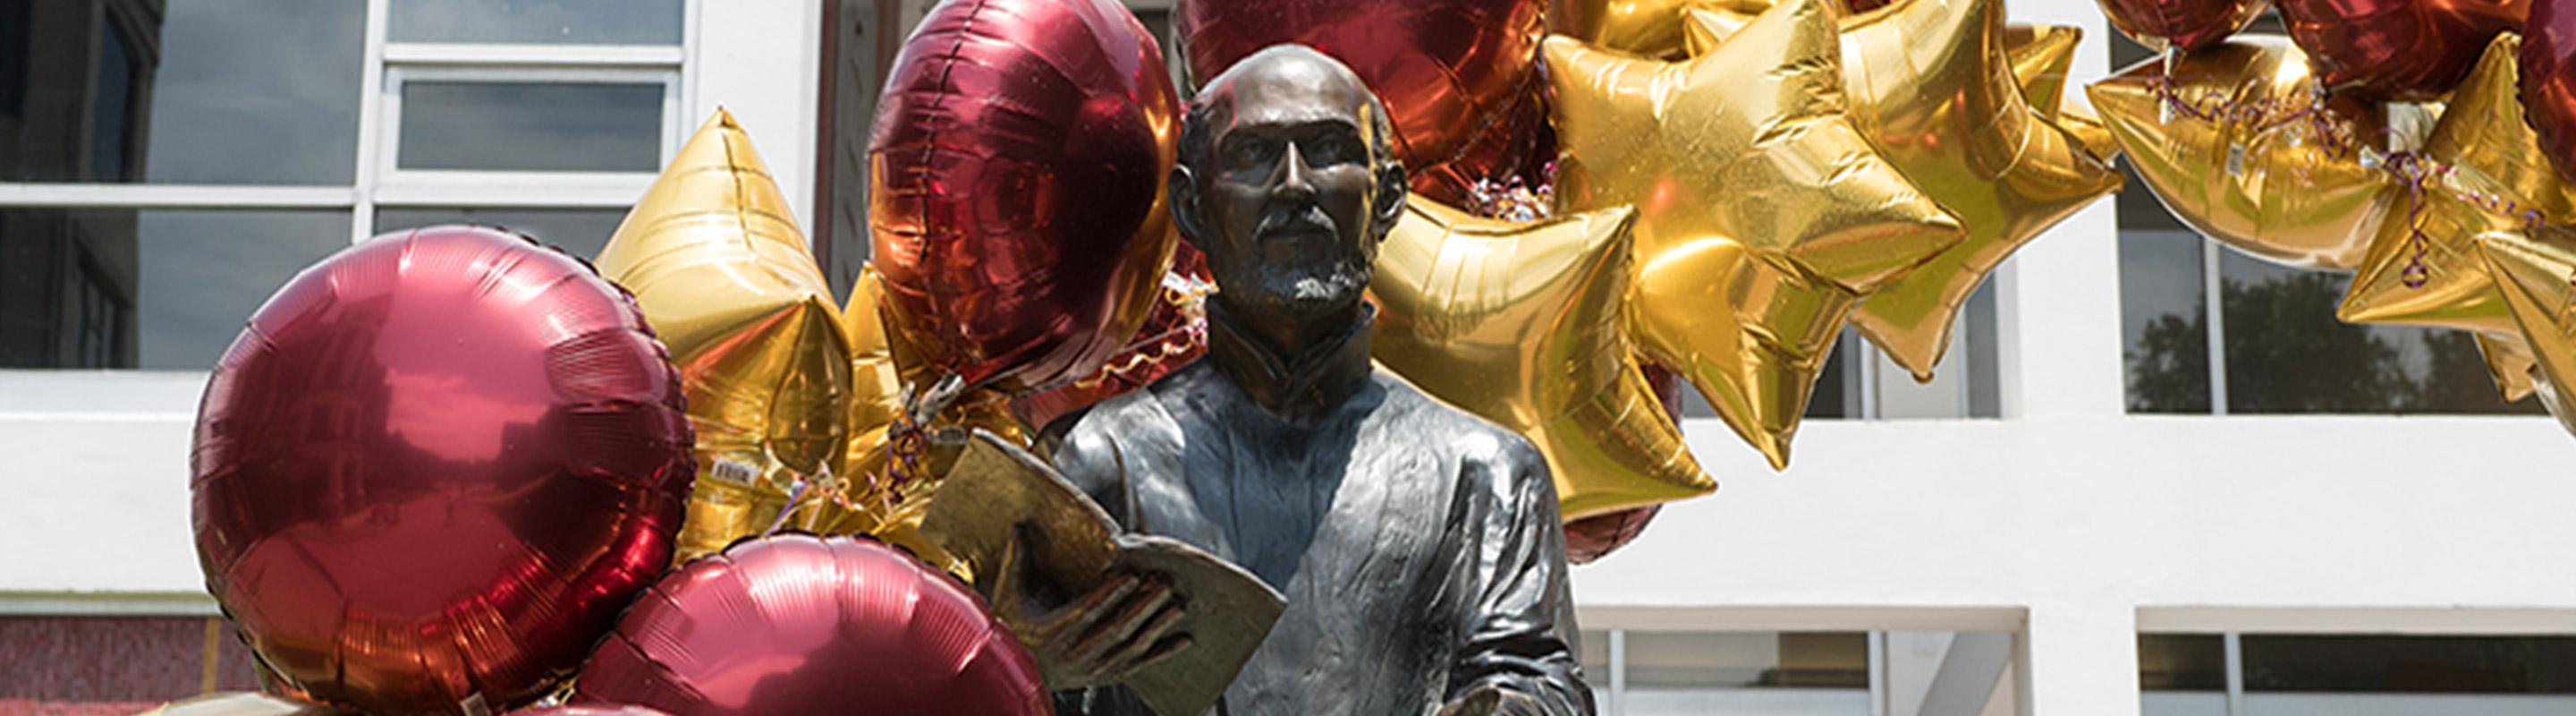 直接拍摄伊格内修斯雕像和栗色和金色的气球